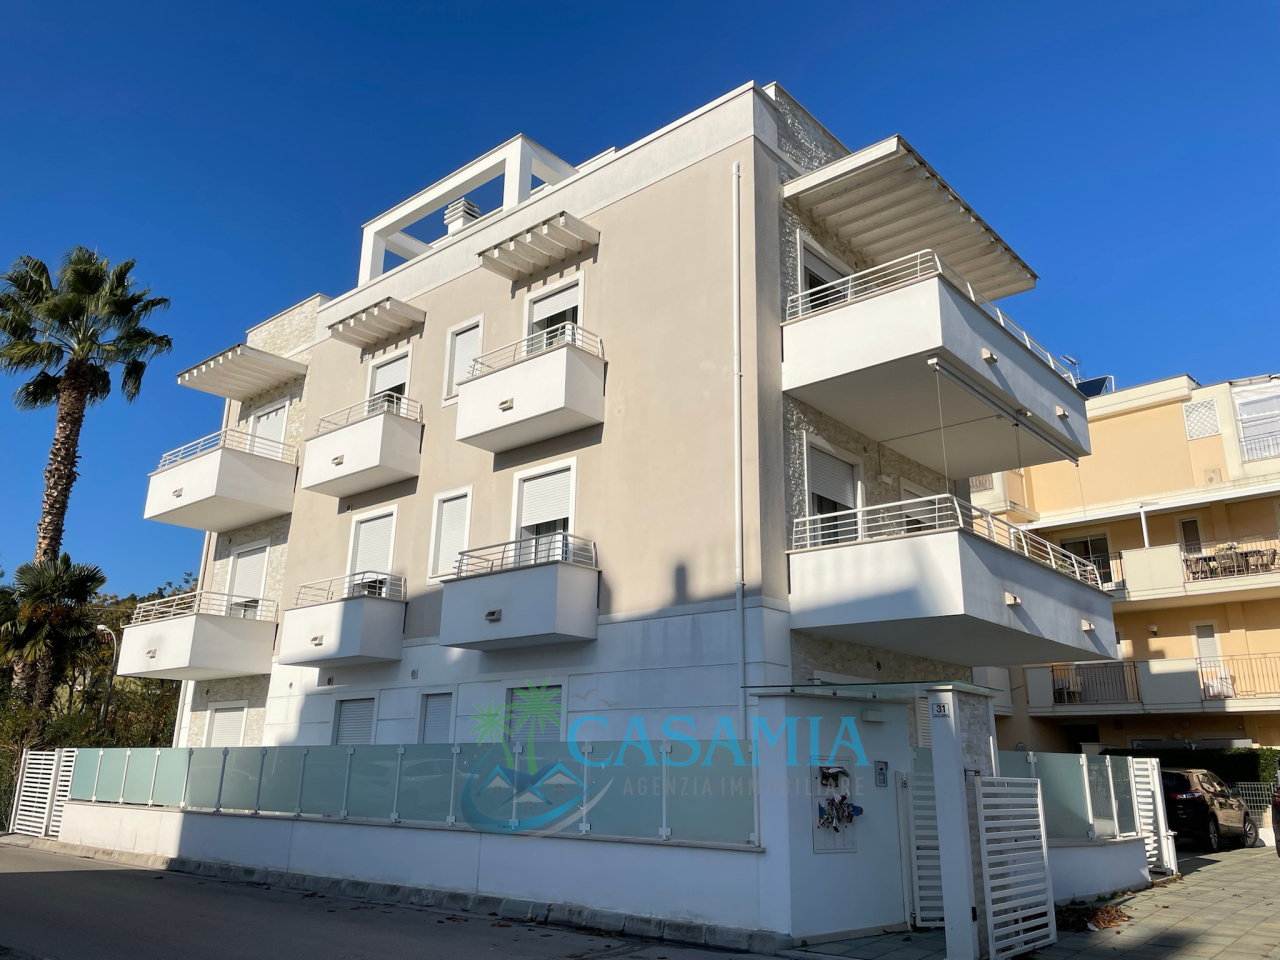 Appartamento in vendita a San Benedetto del Tronto, 4 locali, prezzo € 420.000 | PortaleAgenzieImmobiliari.it